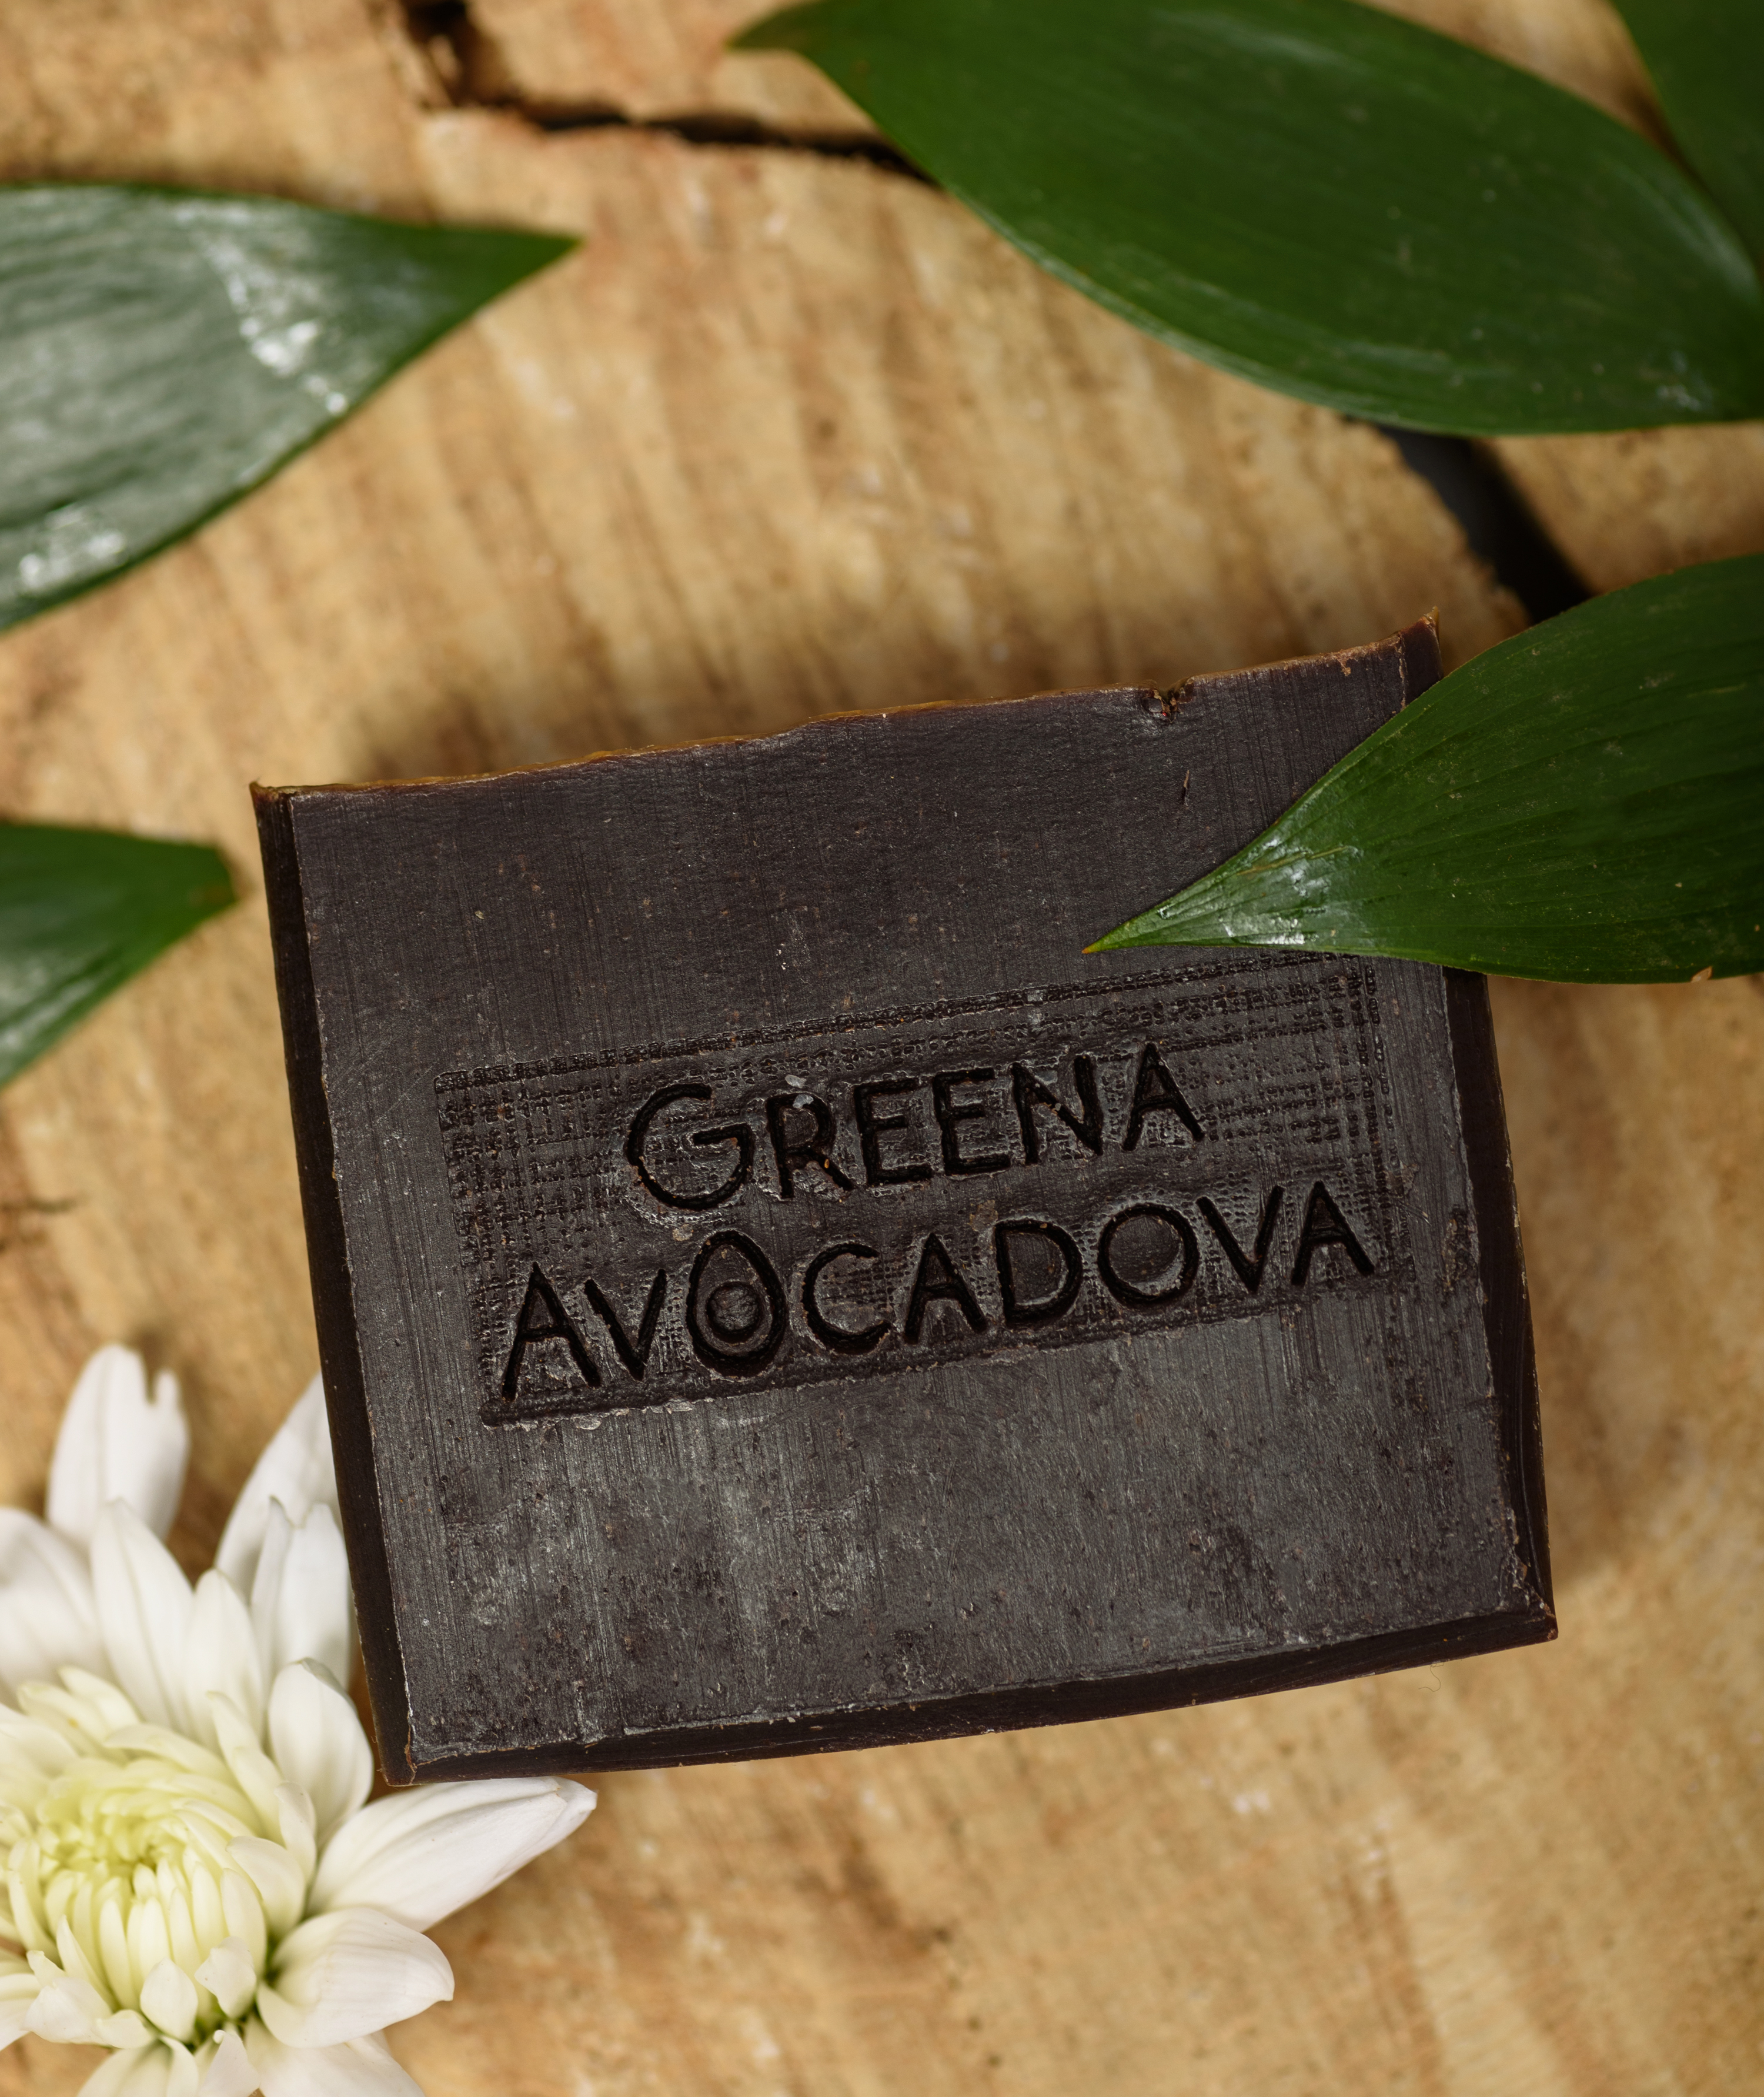 Натурально мыло ручной работы Greena Avocadova шоколад - фото 8